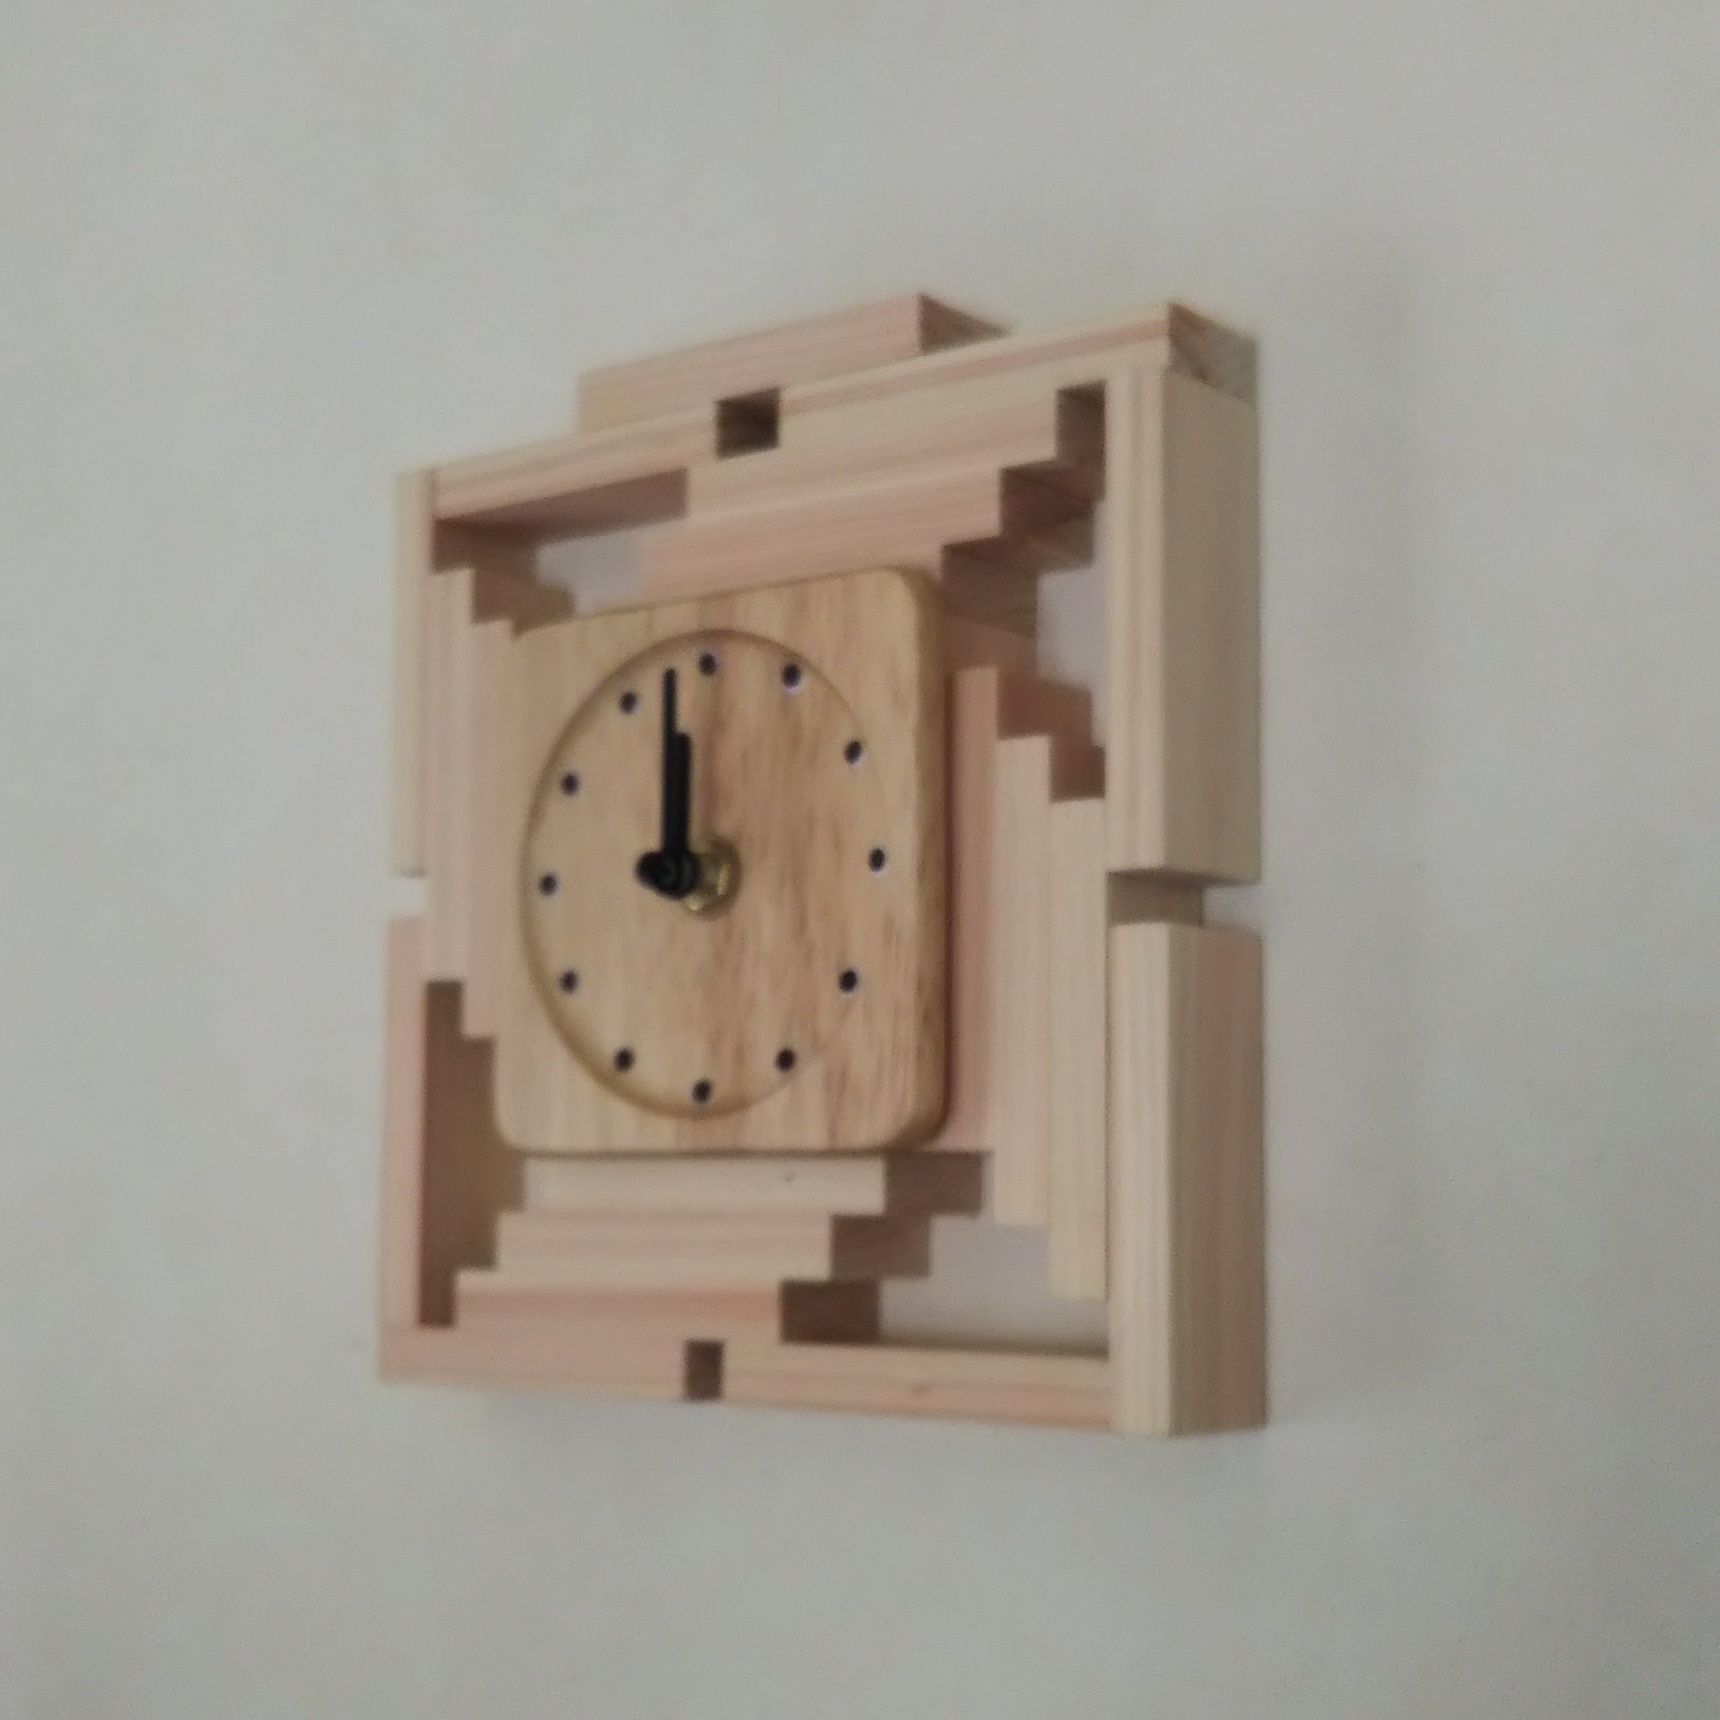 100均材料で木工ブロックアート時計を作る。